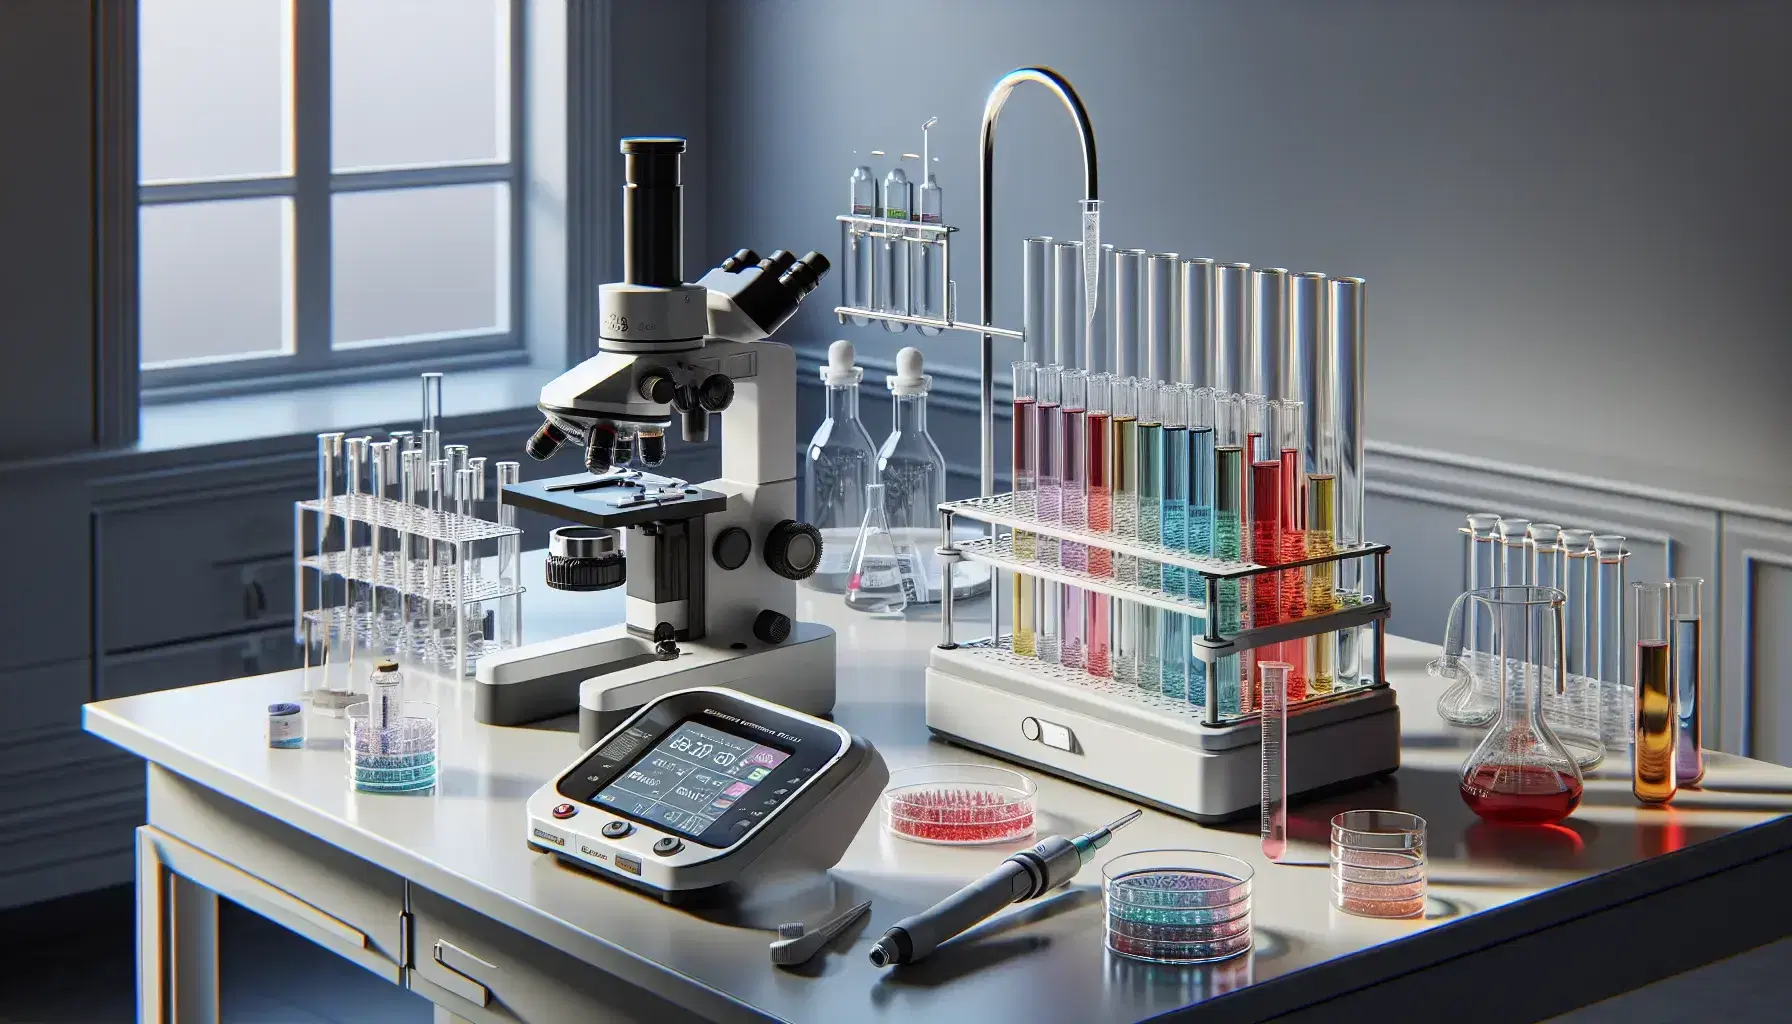 Laboratorio clínico moderno con microscopio, tubos de ensayo con líquidos de colores, pipeta automática, platos de Petri y balanza analítica.